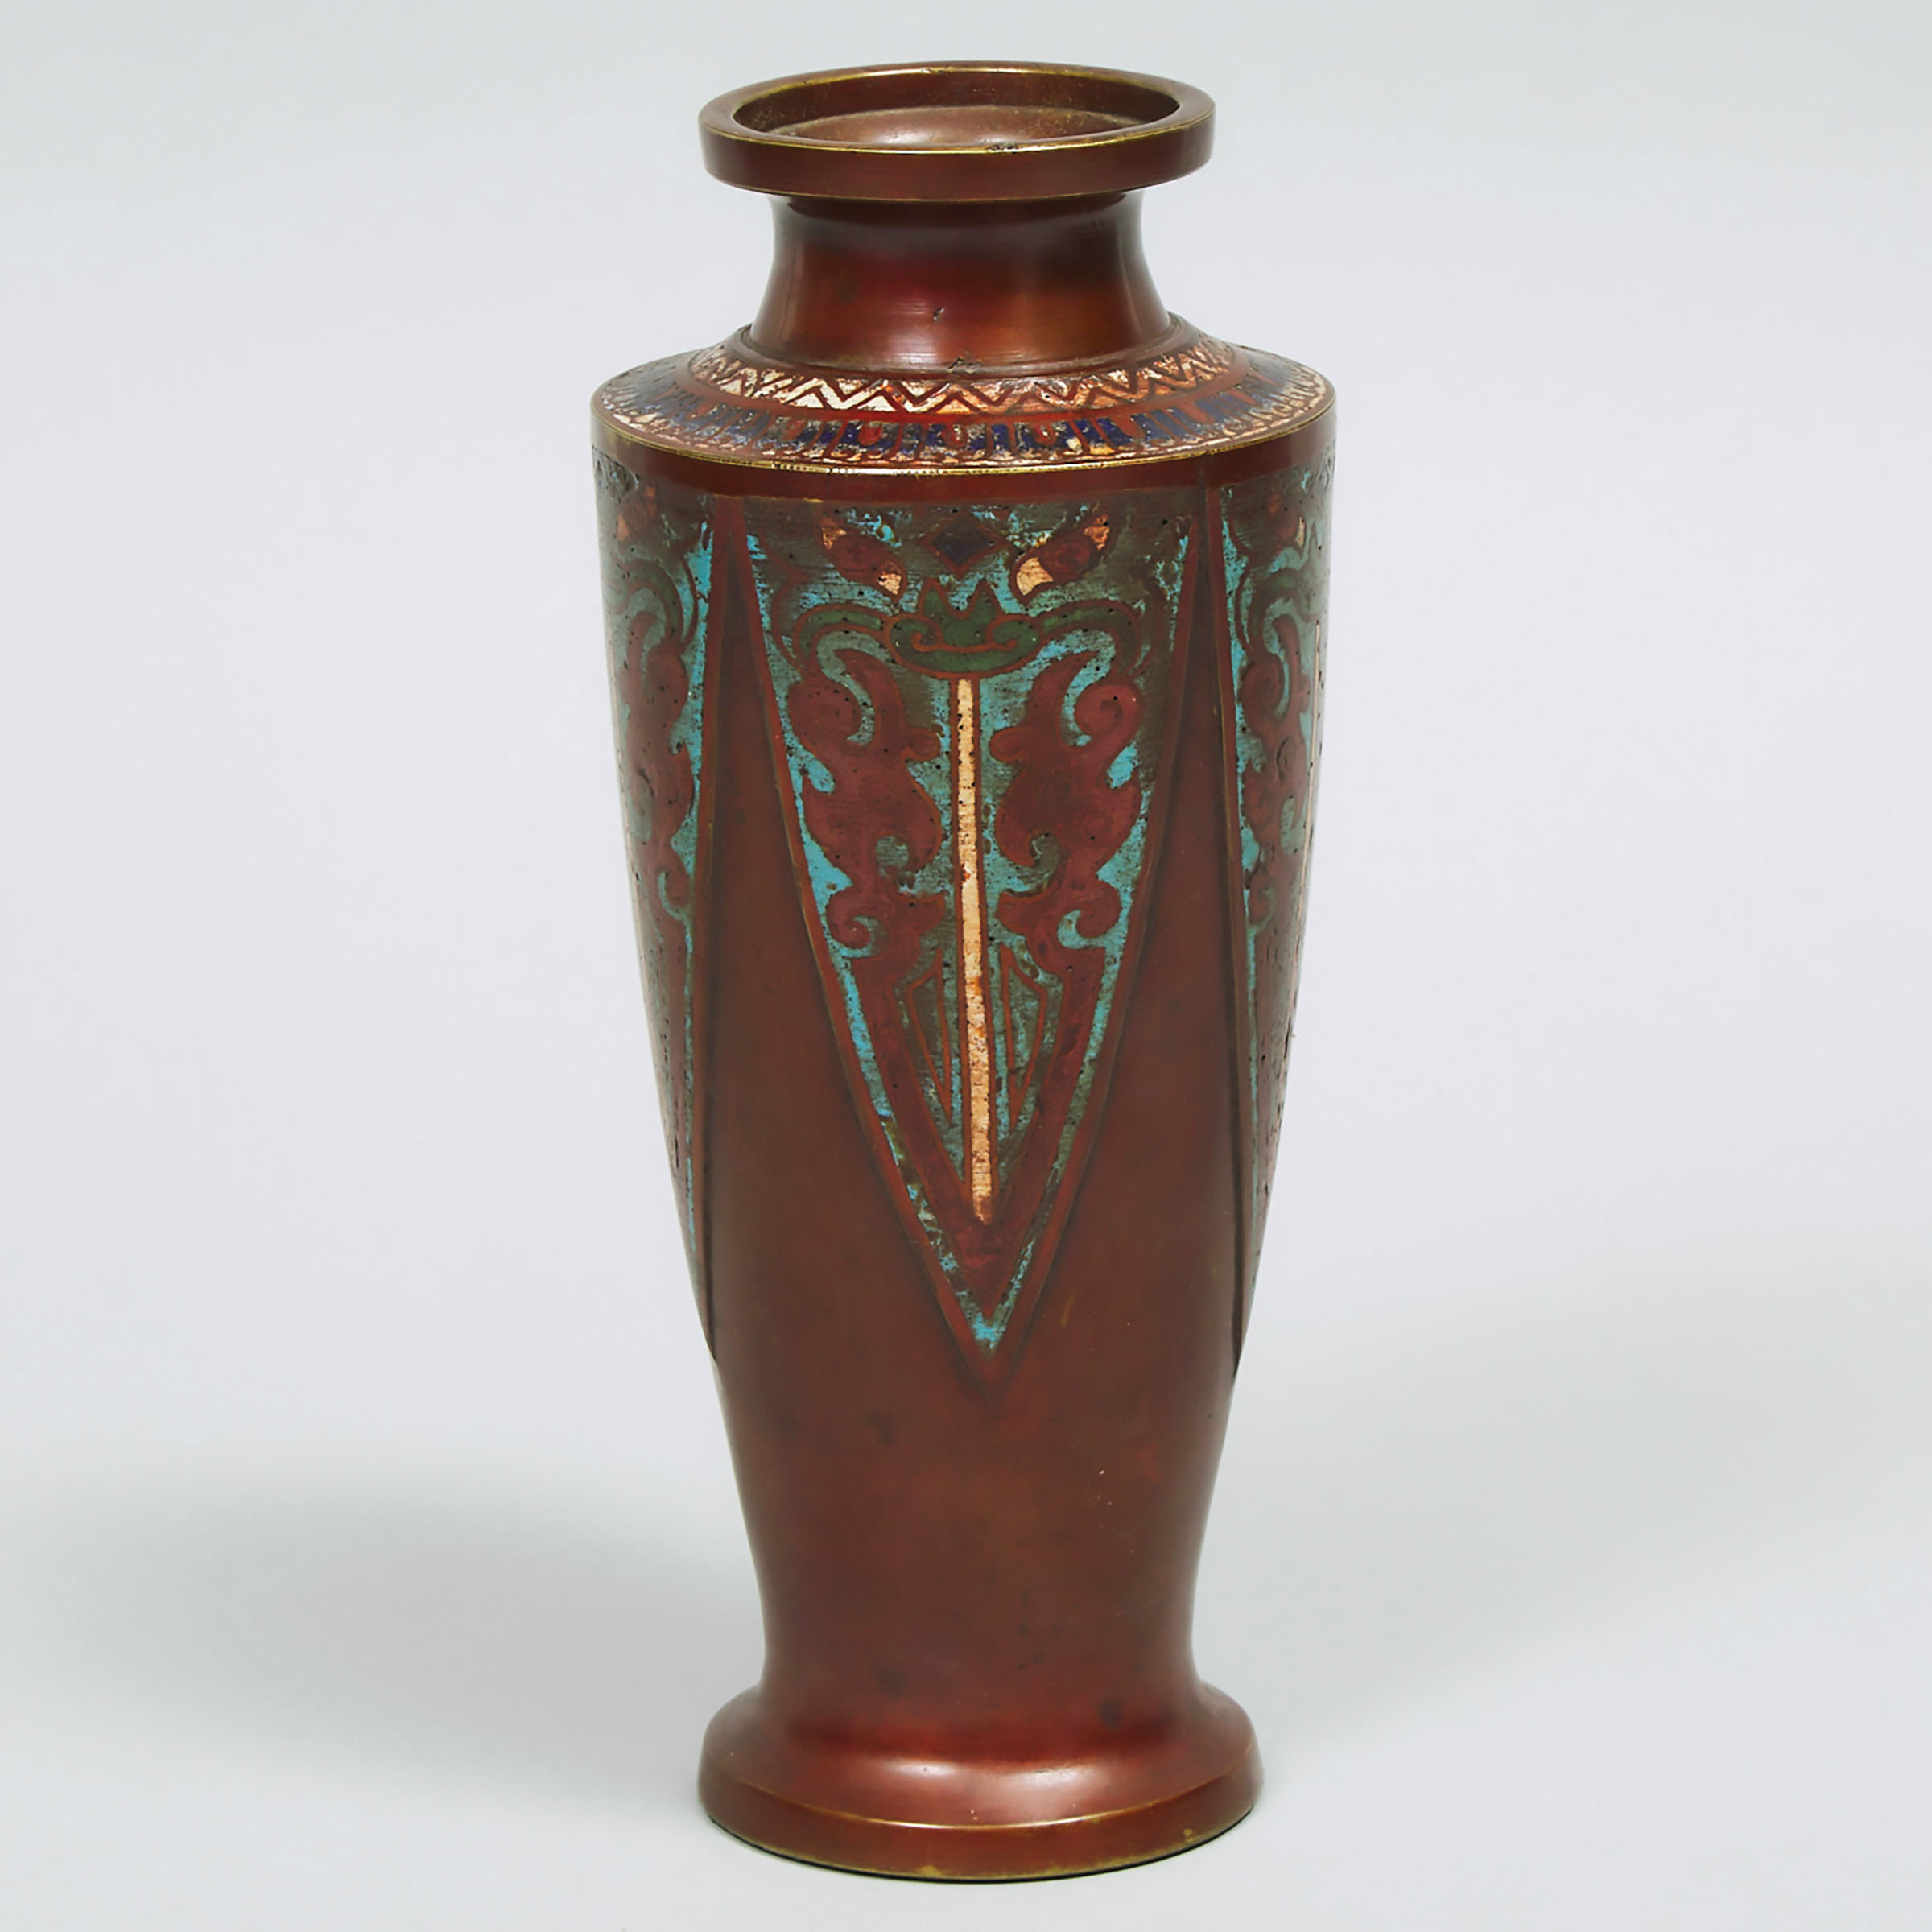 Japanese Cloisonné Enamelled Bronze Vase, mid 20th century